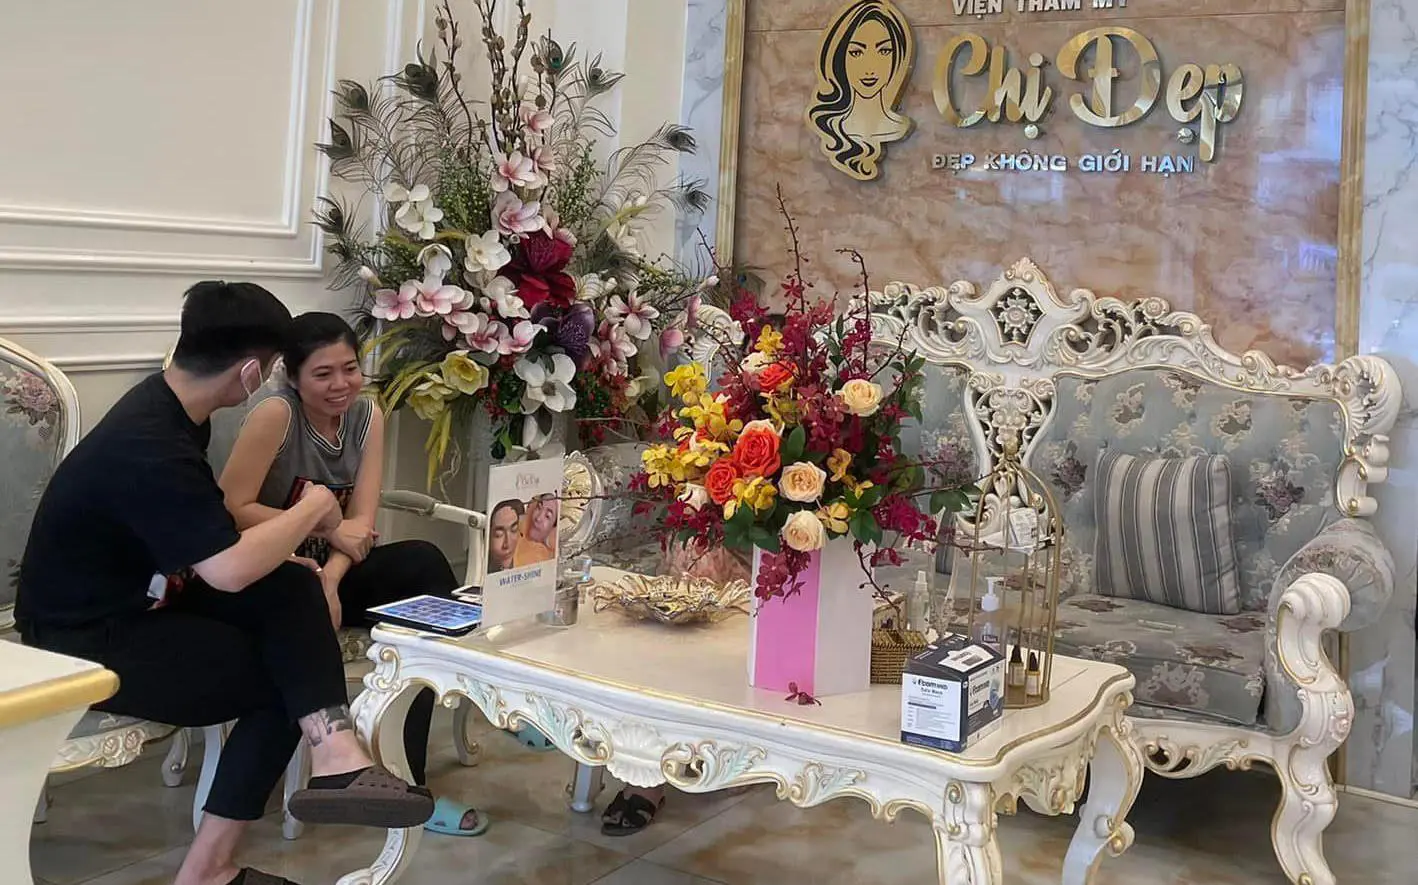 Thẩm mỹ viện Chị Đẹp và dấu ấn trong ngành làm đẹp tại Việt Nam